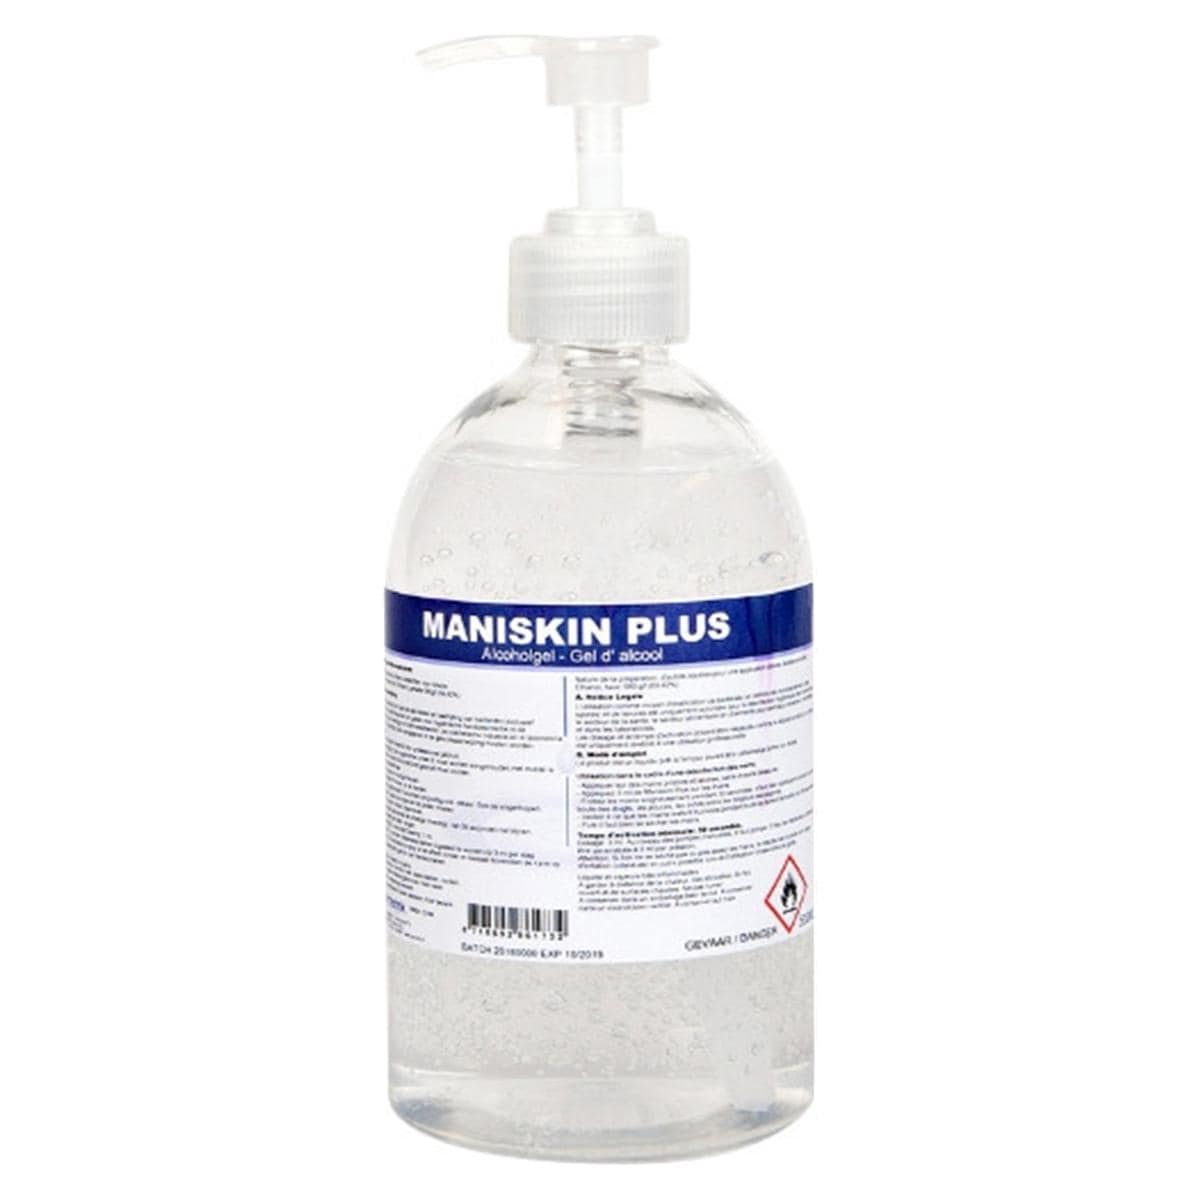 Maniskin Plus - Flacon, 500 ml